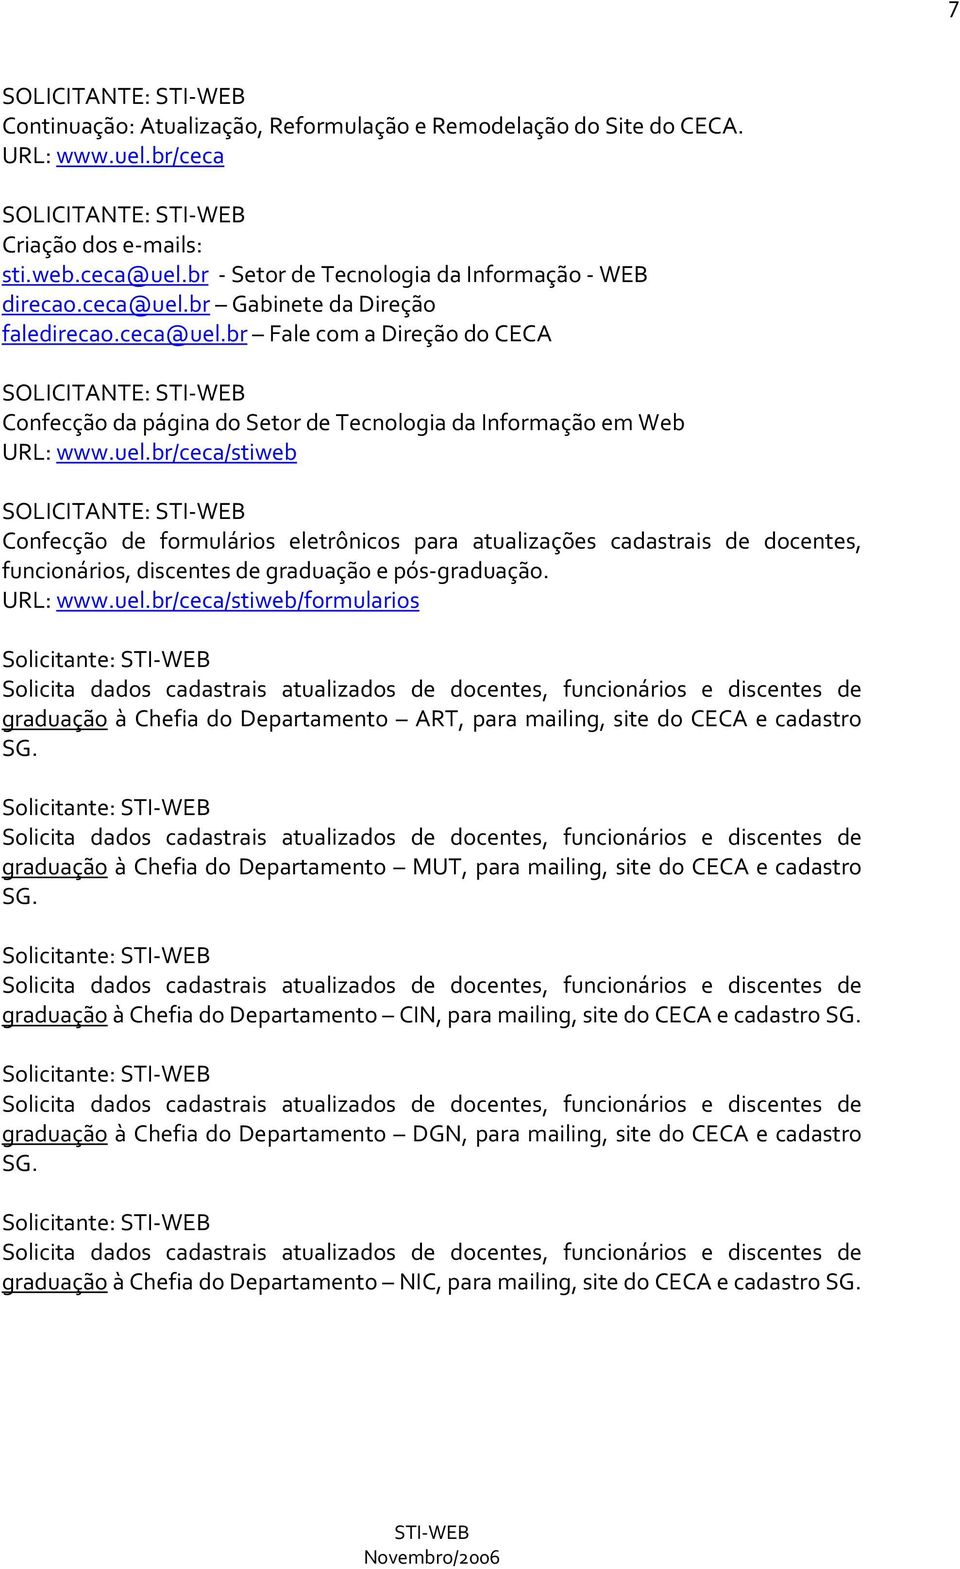 uel.br/ceca/stiweb SOLICITANTE: Confecção de formulários eletrônicos para atualizações cadastrais de docentes, funcionários, discentes de graduação e pós-graduação. URL: